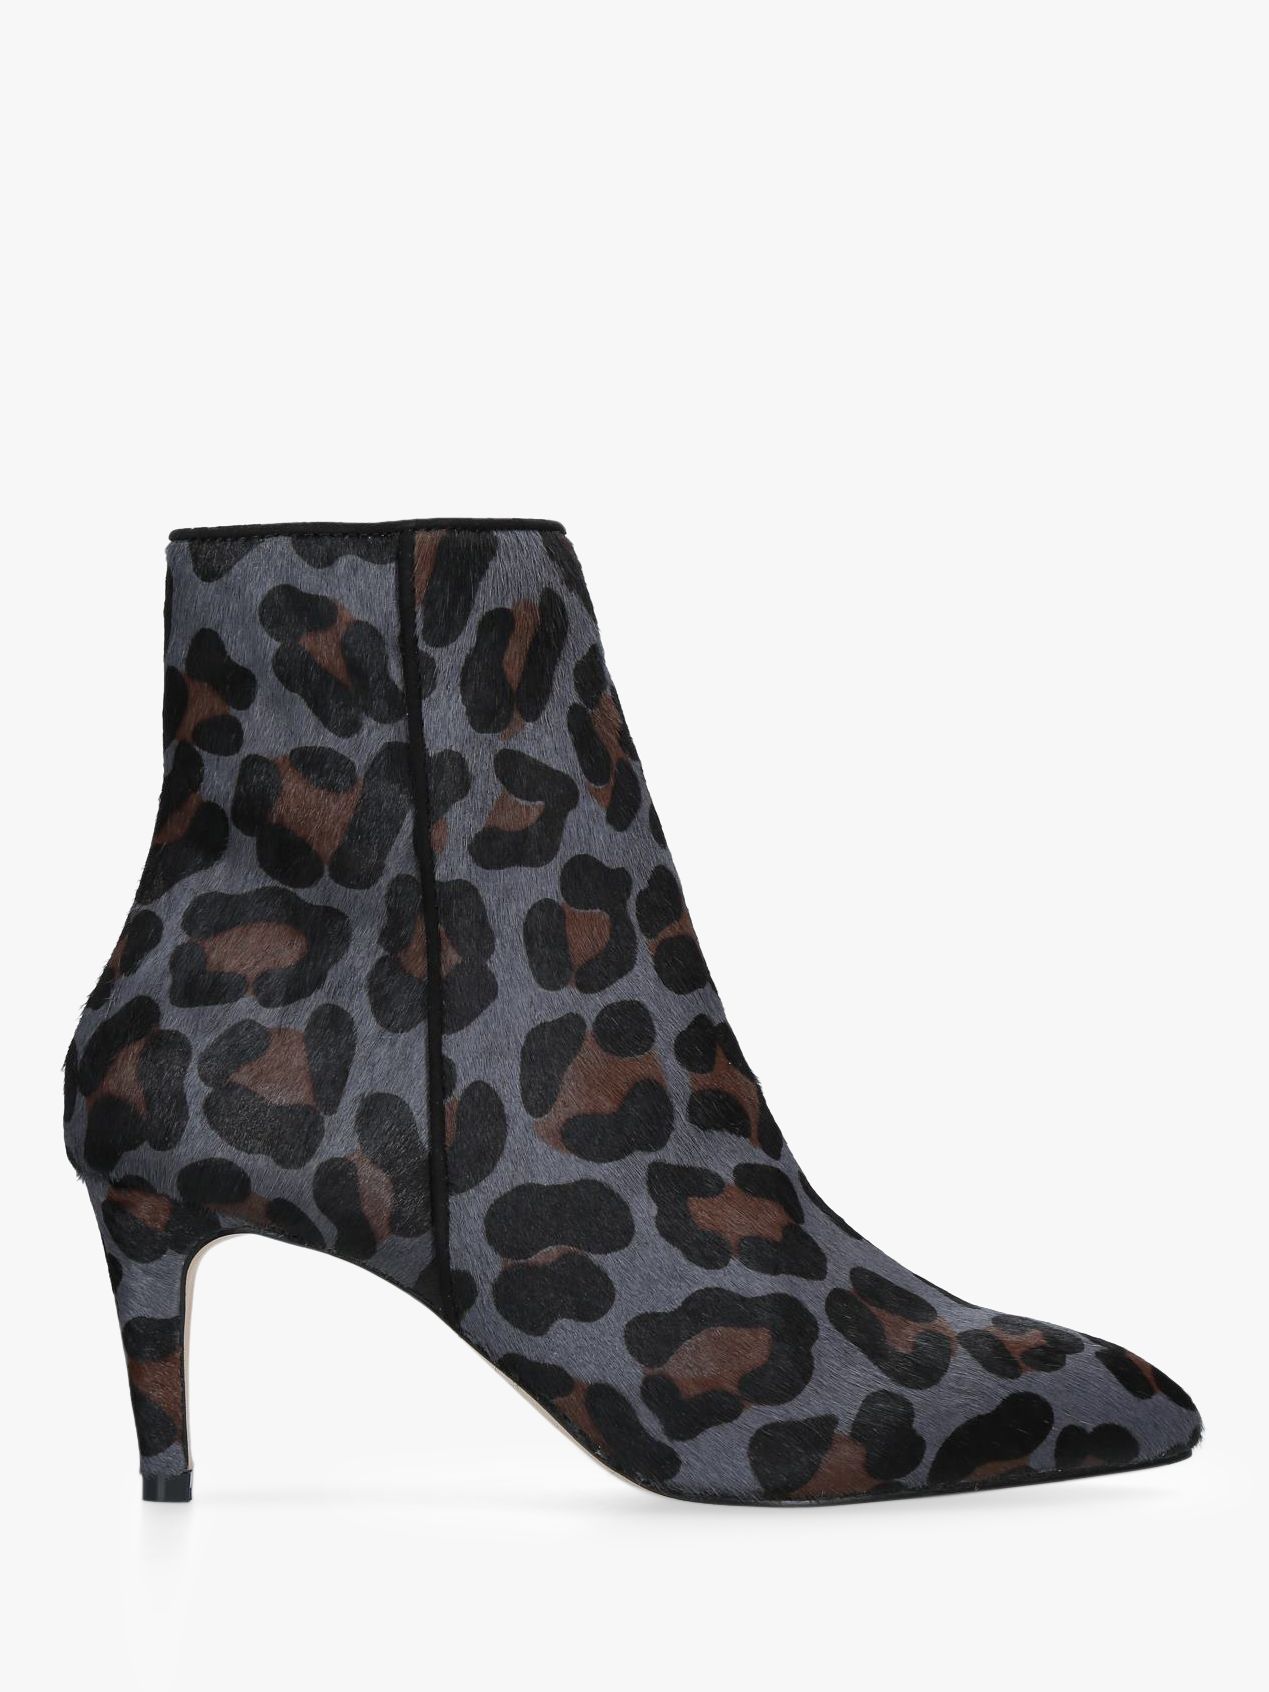 grey leopard print booties